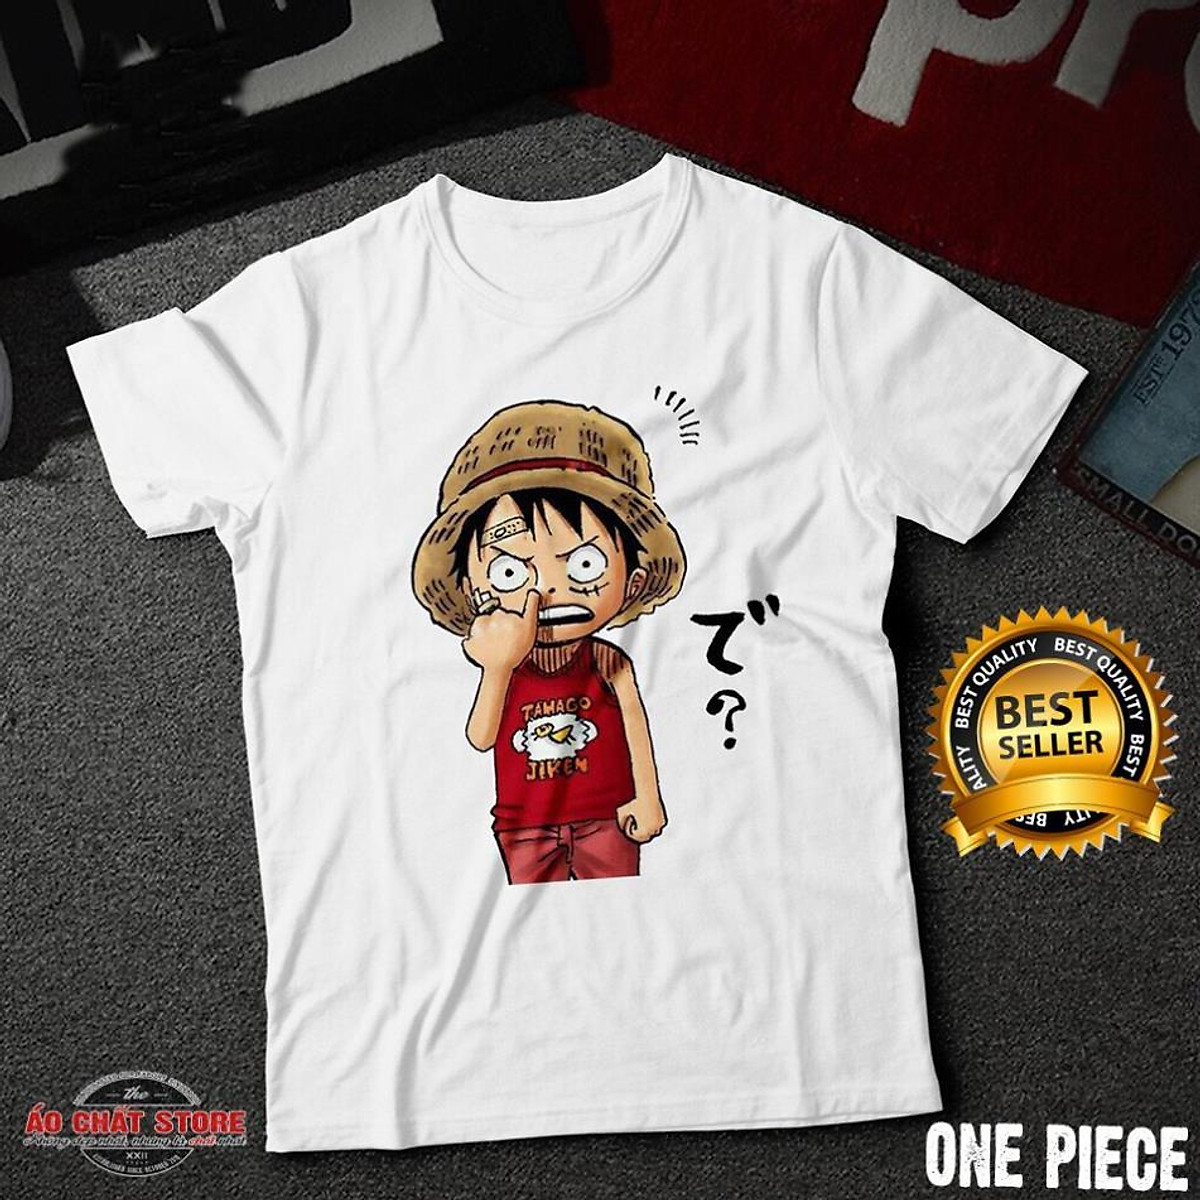 ẢNH THẬT) Áo Thun One Piece Luffy Chibi Siêu Chất | Áo Phông Đảo ...